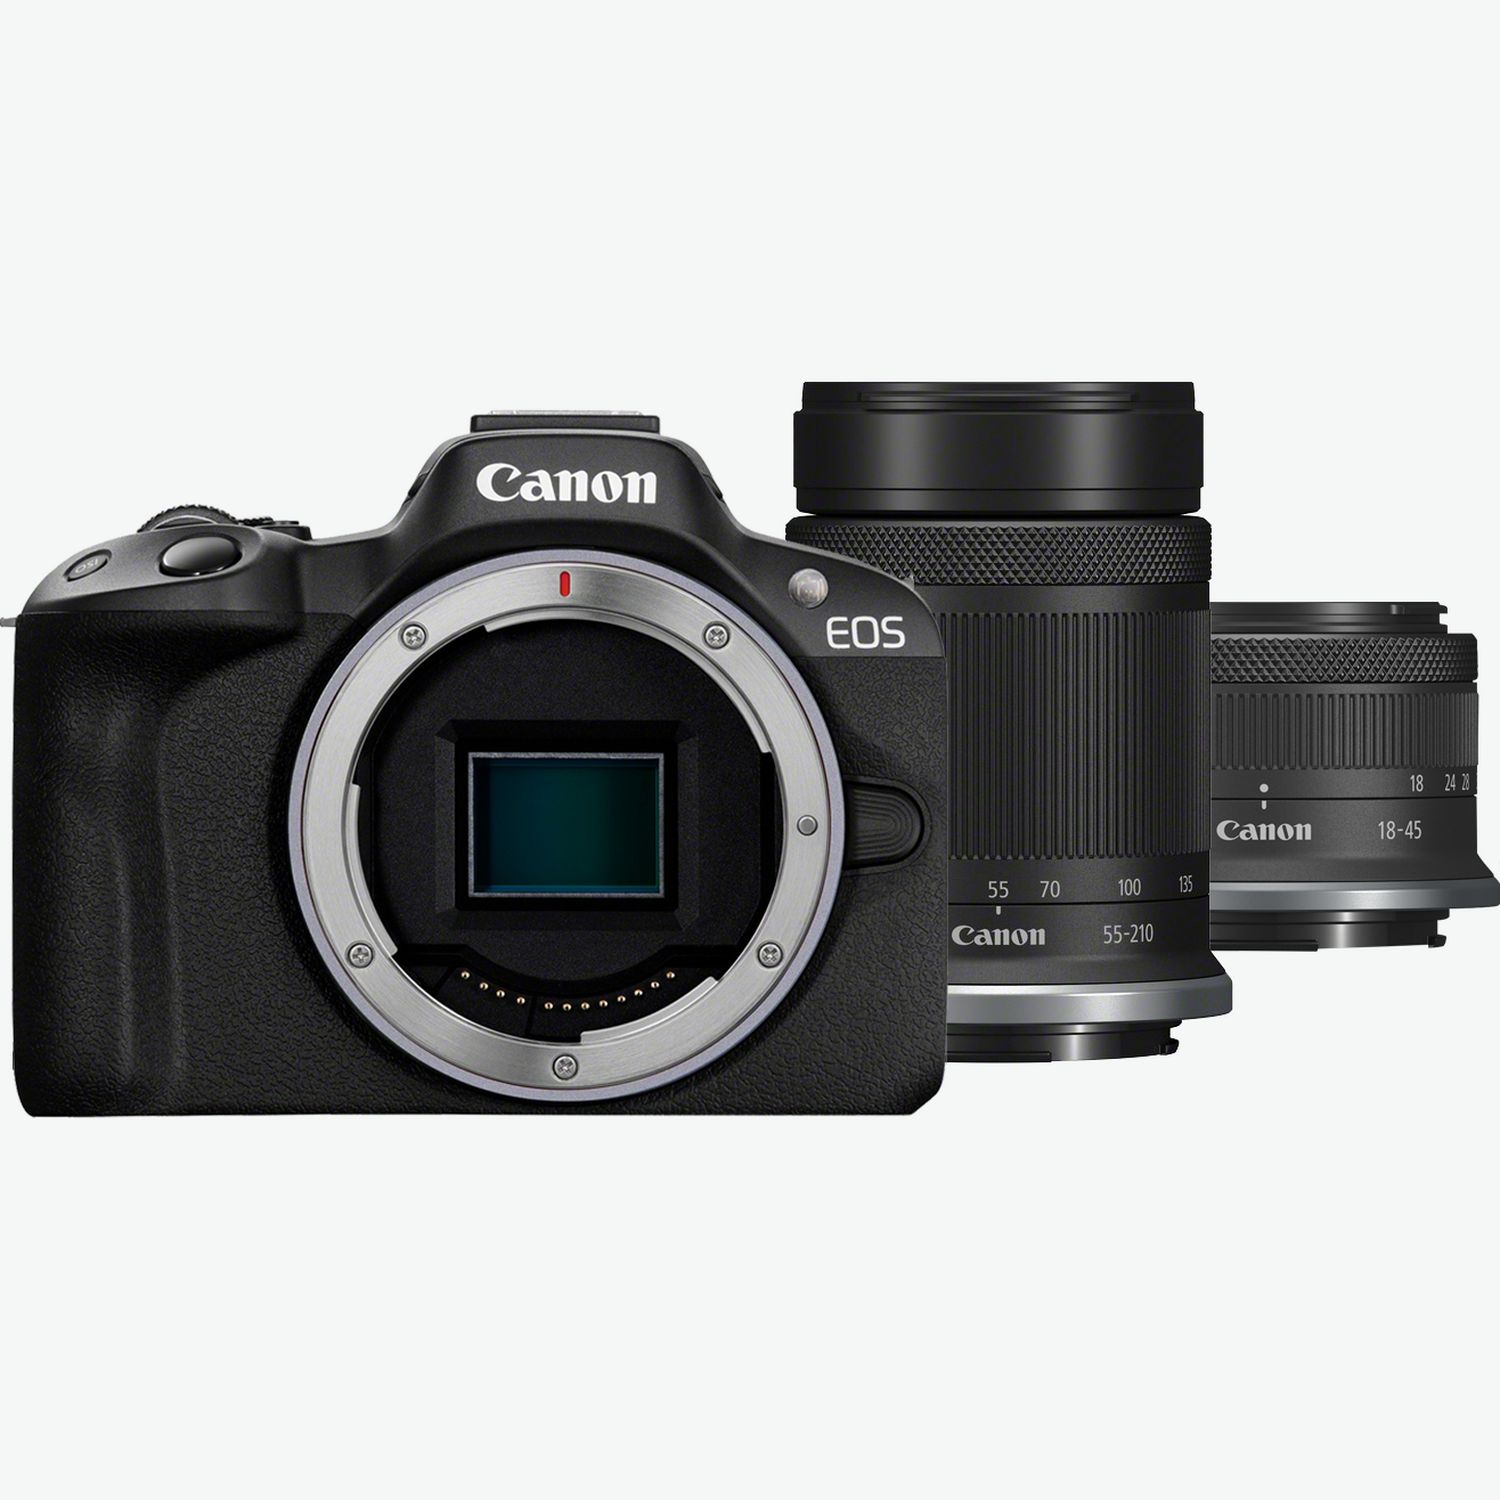 Canon EOS 2000D + EF-S WLAN-Kameras — Deutschland II 18-55mm Canon IS Objektiv Shop in